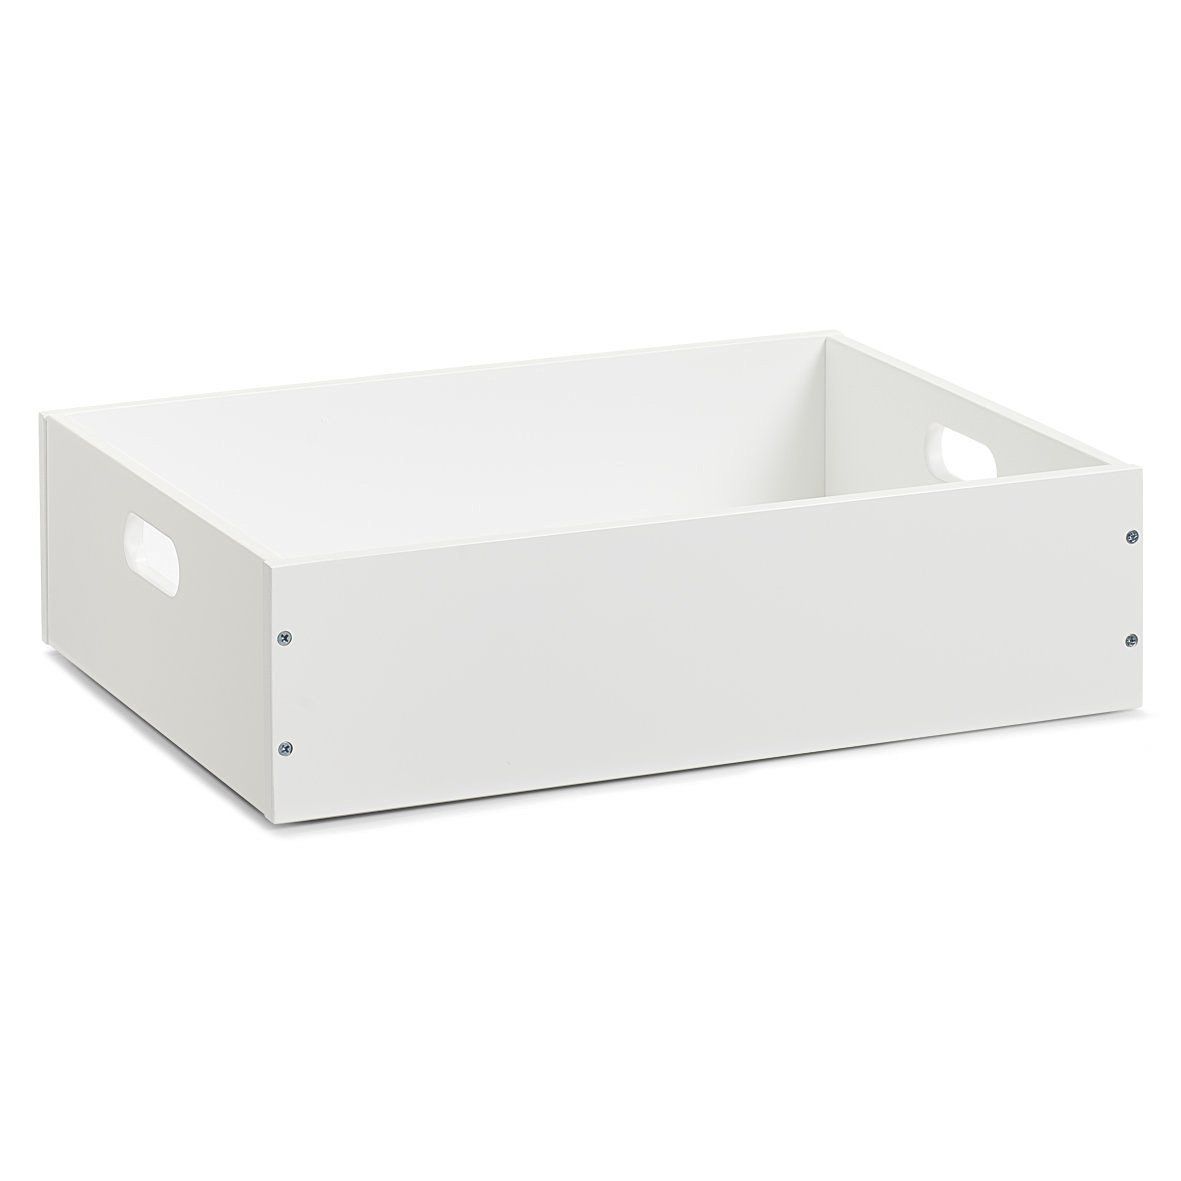 Zeller Úložný box v bílé barvě, 40 x 30 x 11 cm, MDF deska - EMAKO.CZ s.r.o.